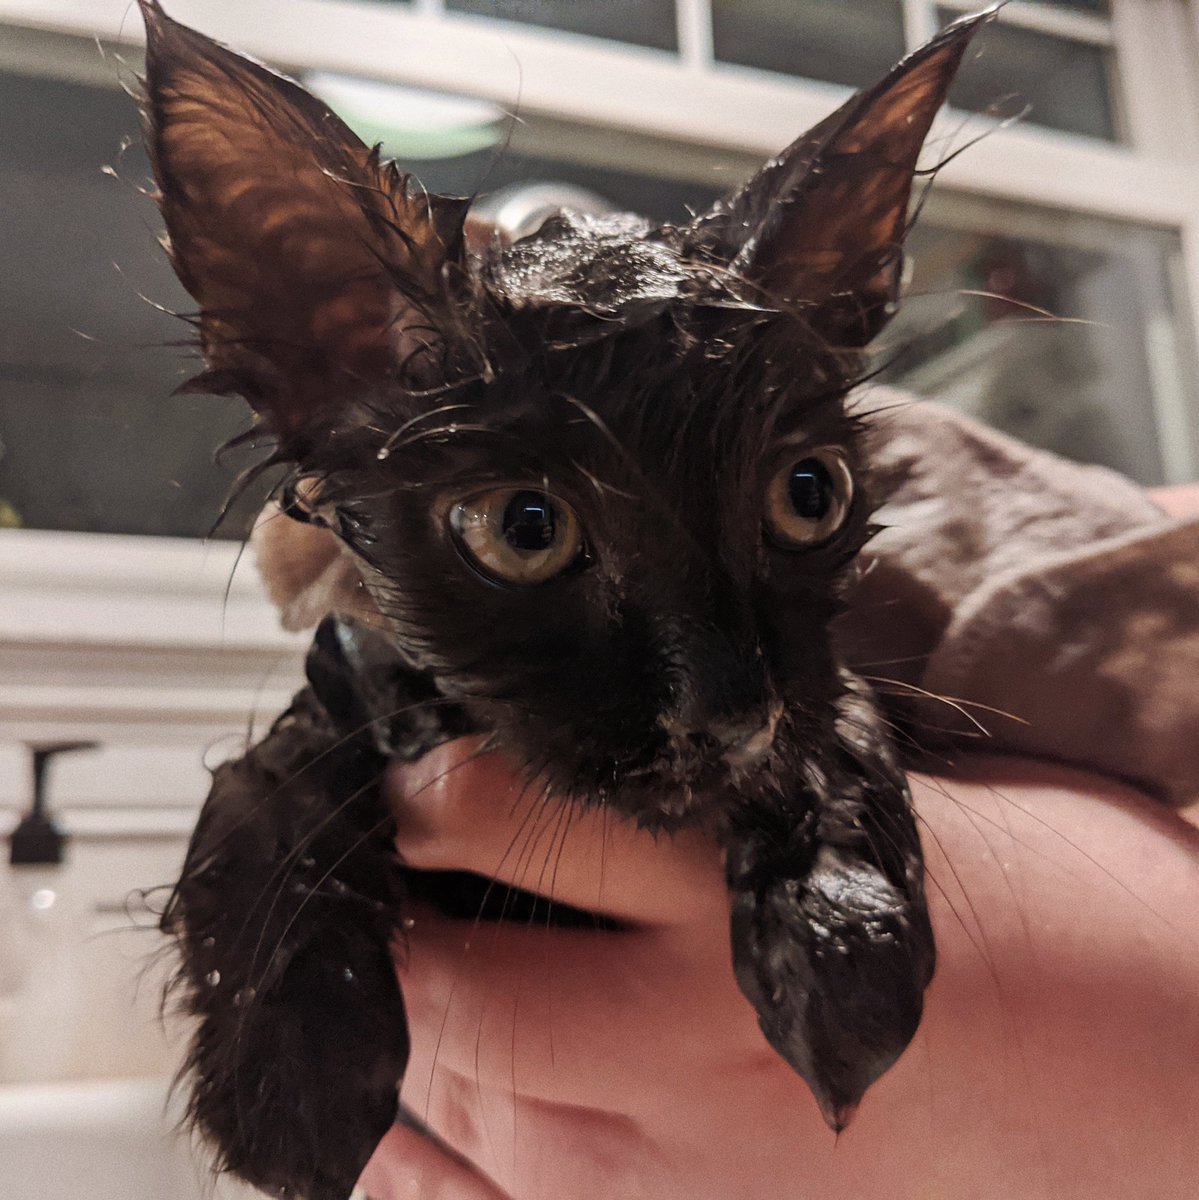 Sid gets a bath.